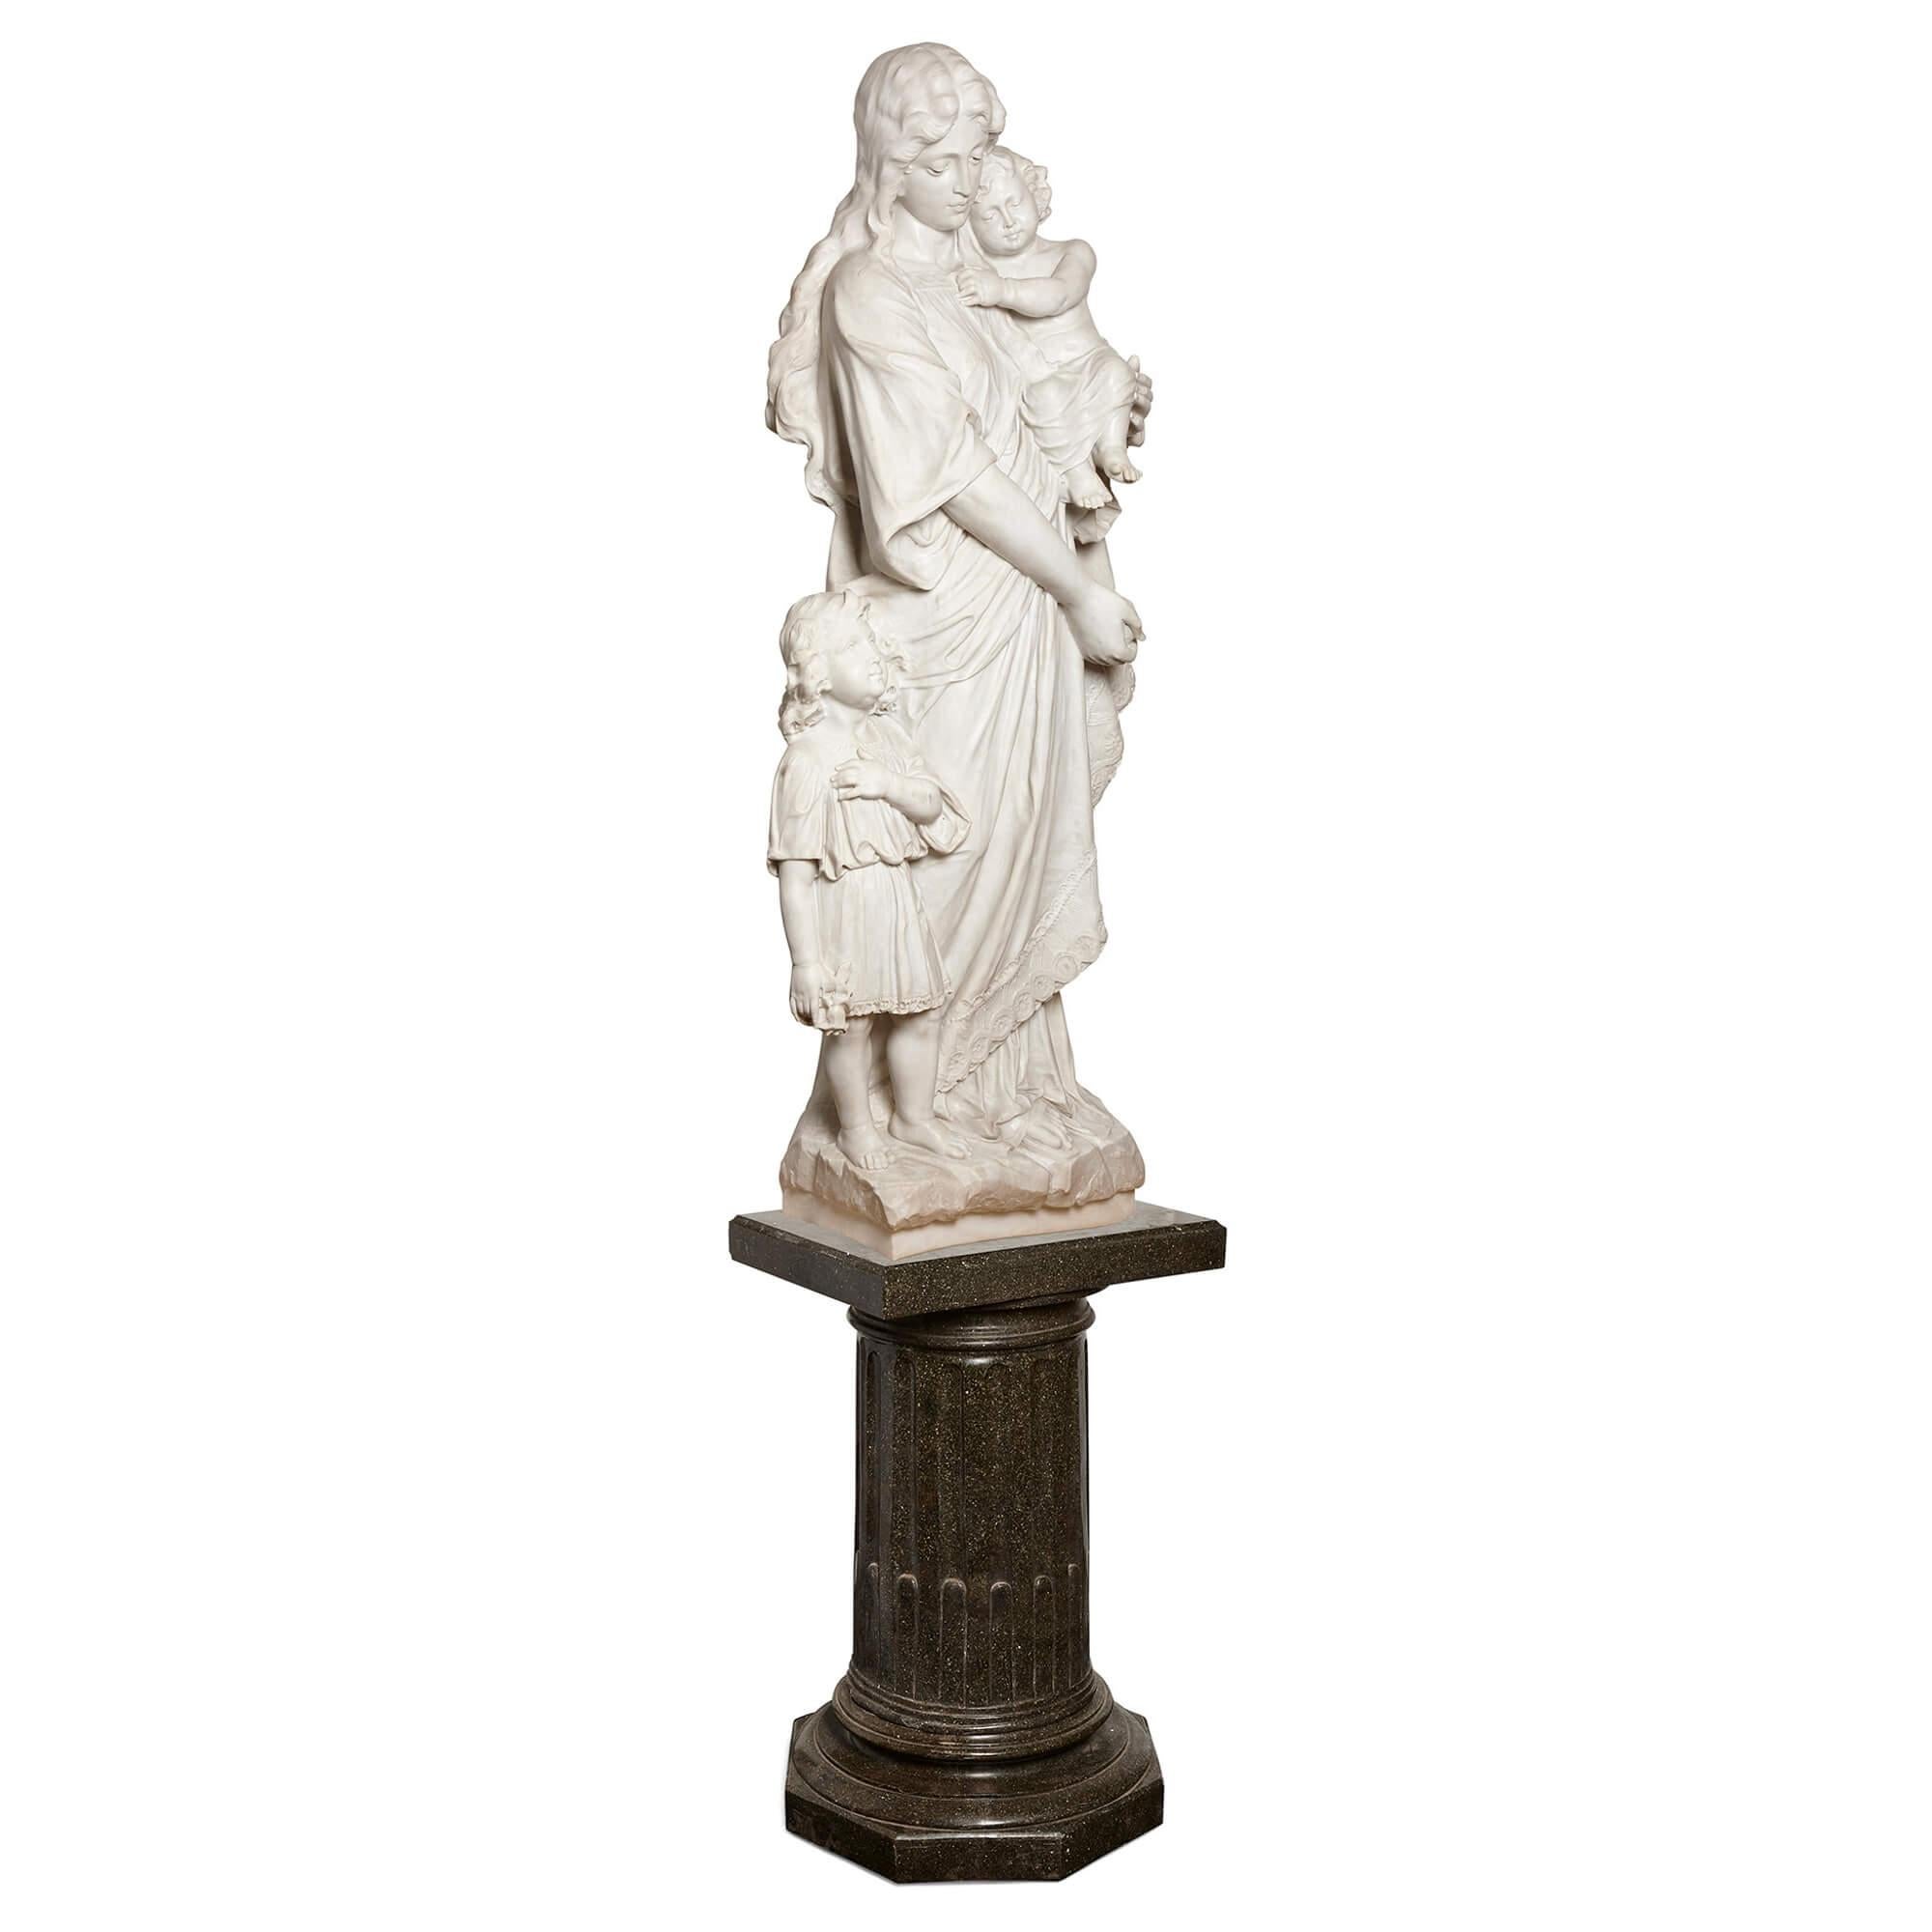 Grand groupe en marbre de Carrare représentant la Vierge, l'Enfant et le Baptiste signé P. Romanelli
Italien, 19ème siècle
Mesures : Figure : hauteur, 170cm, largeur 70cm, profondeur 40cm
Base : hauteur 93,5cm, largeur 59,5cm, profondeur